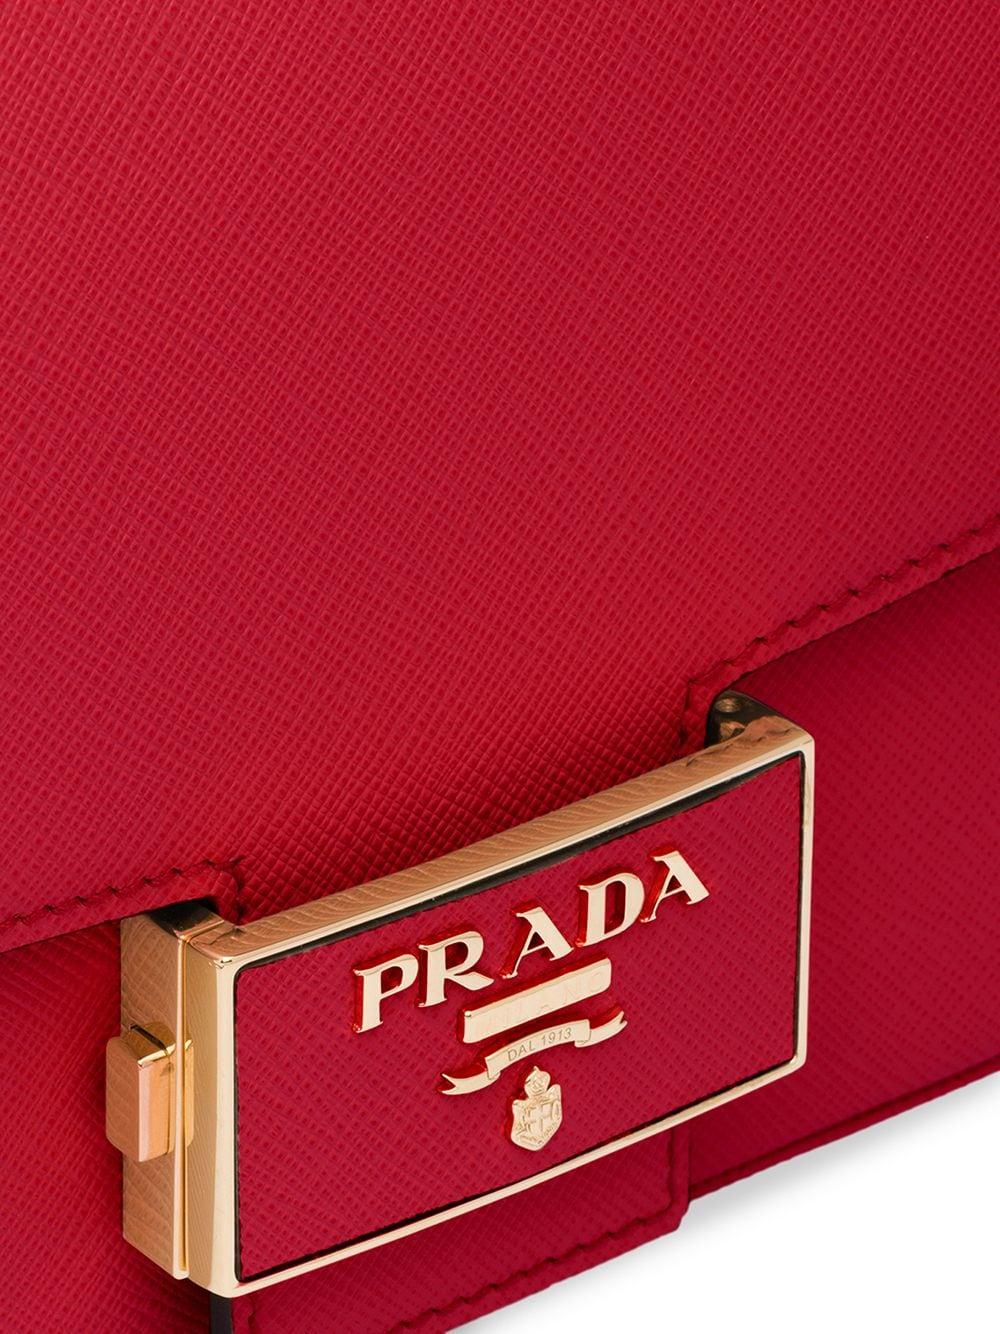 Prada Monochrome Saffiano Bag - Red Shoulder Bags, Handbags - PRA826834